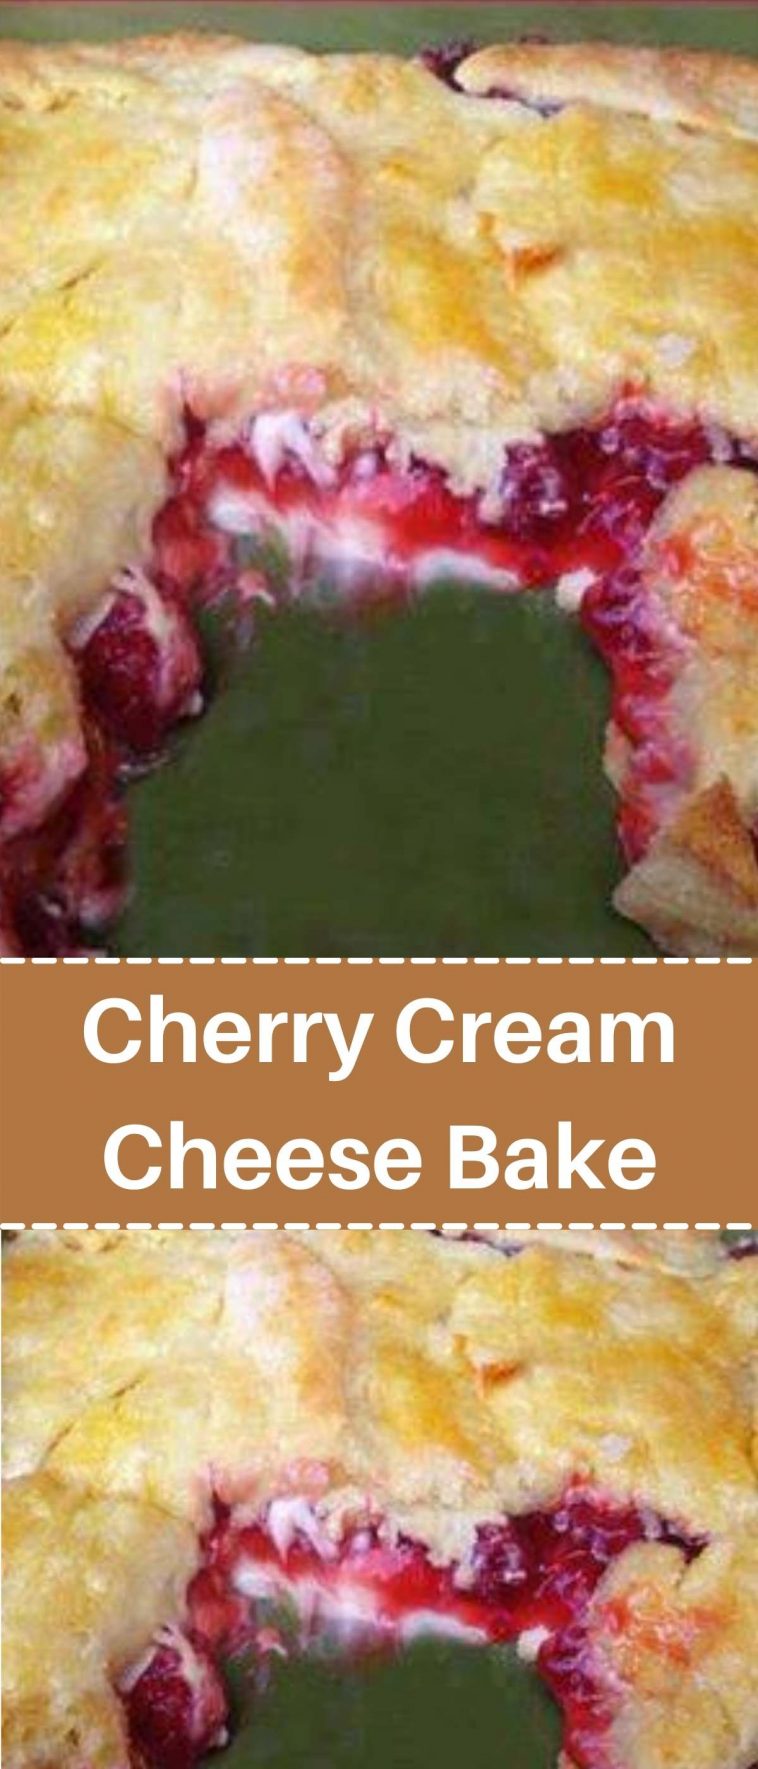 Cherry Cream Cheese Bake